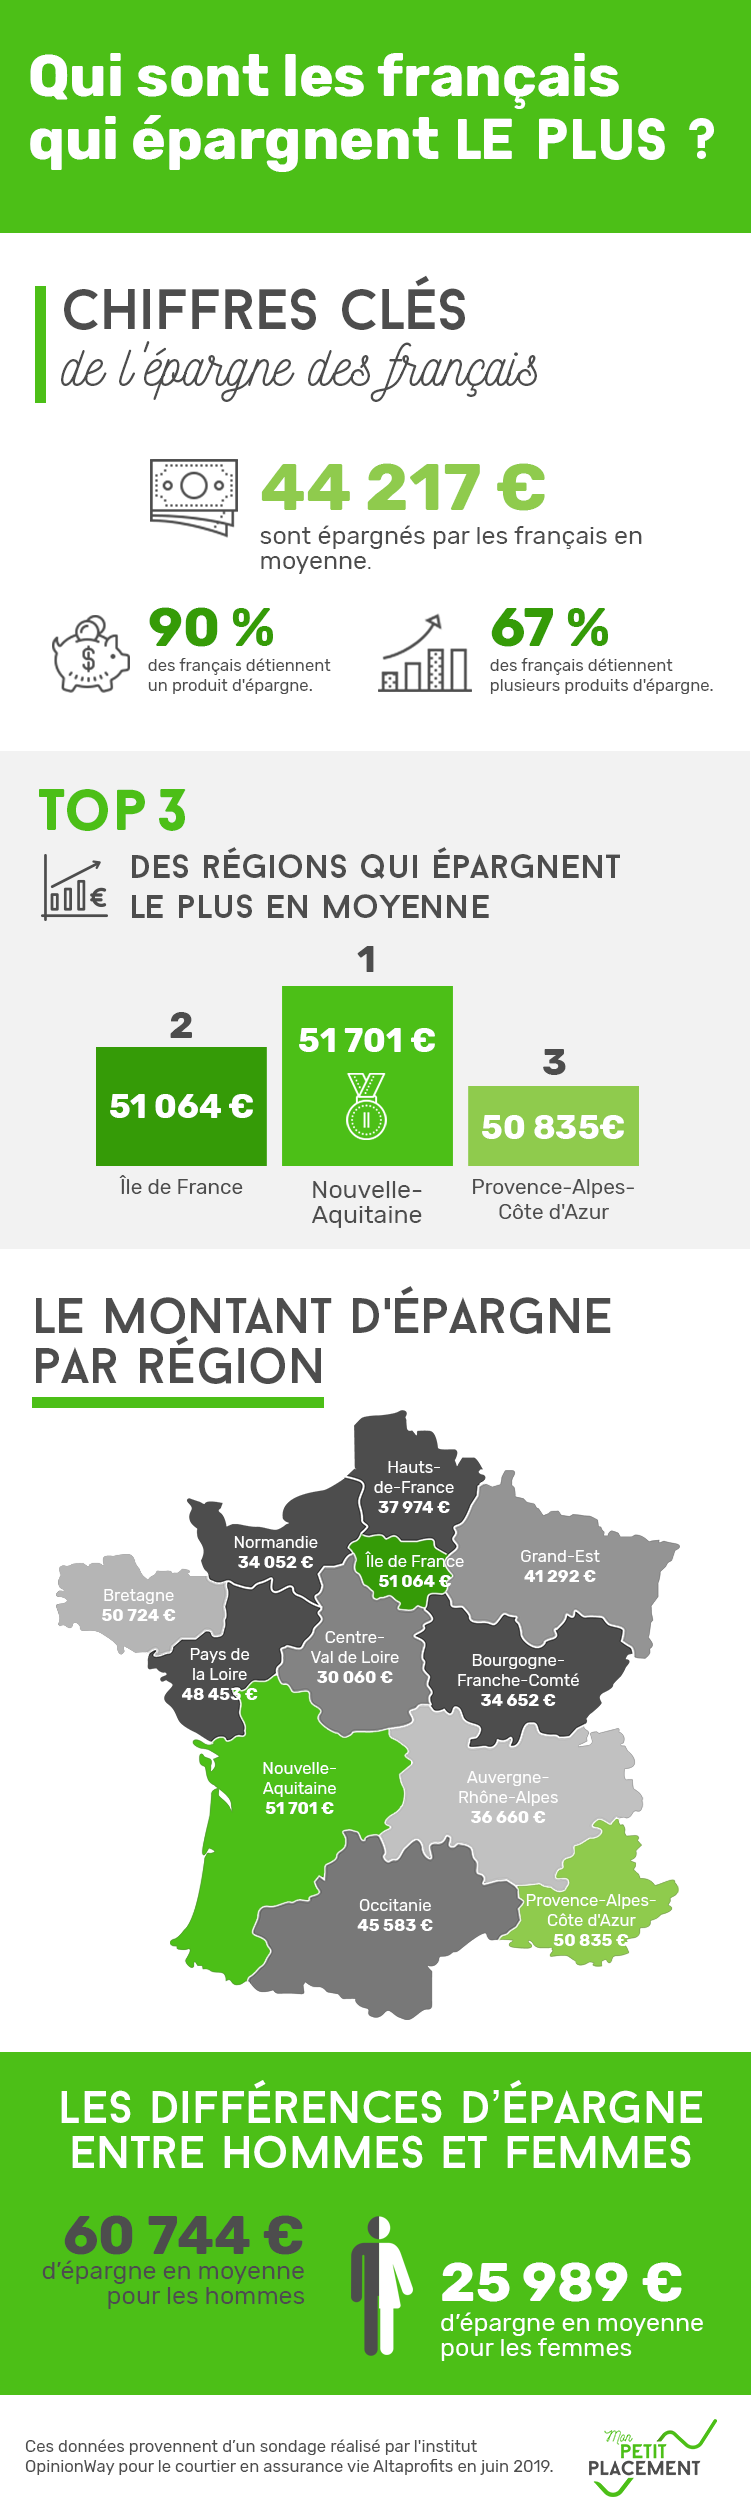 Infographie épargne des français par région